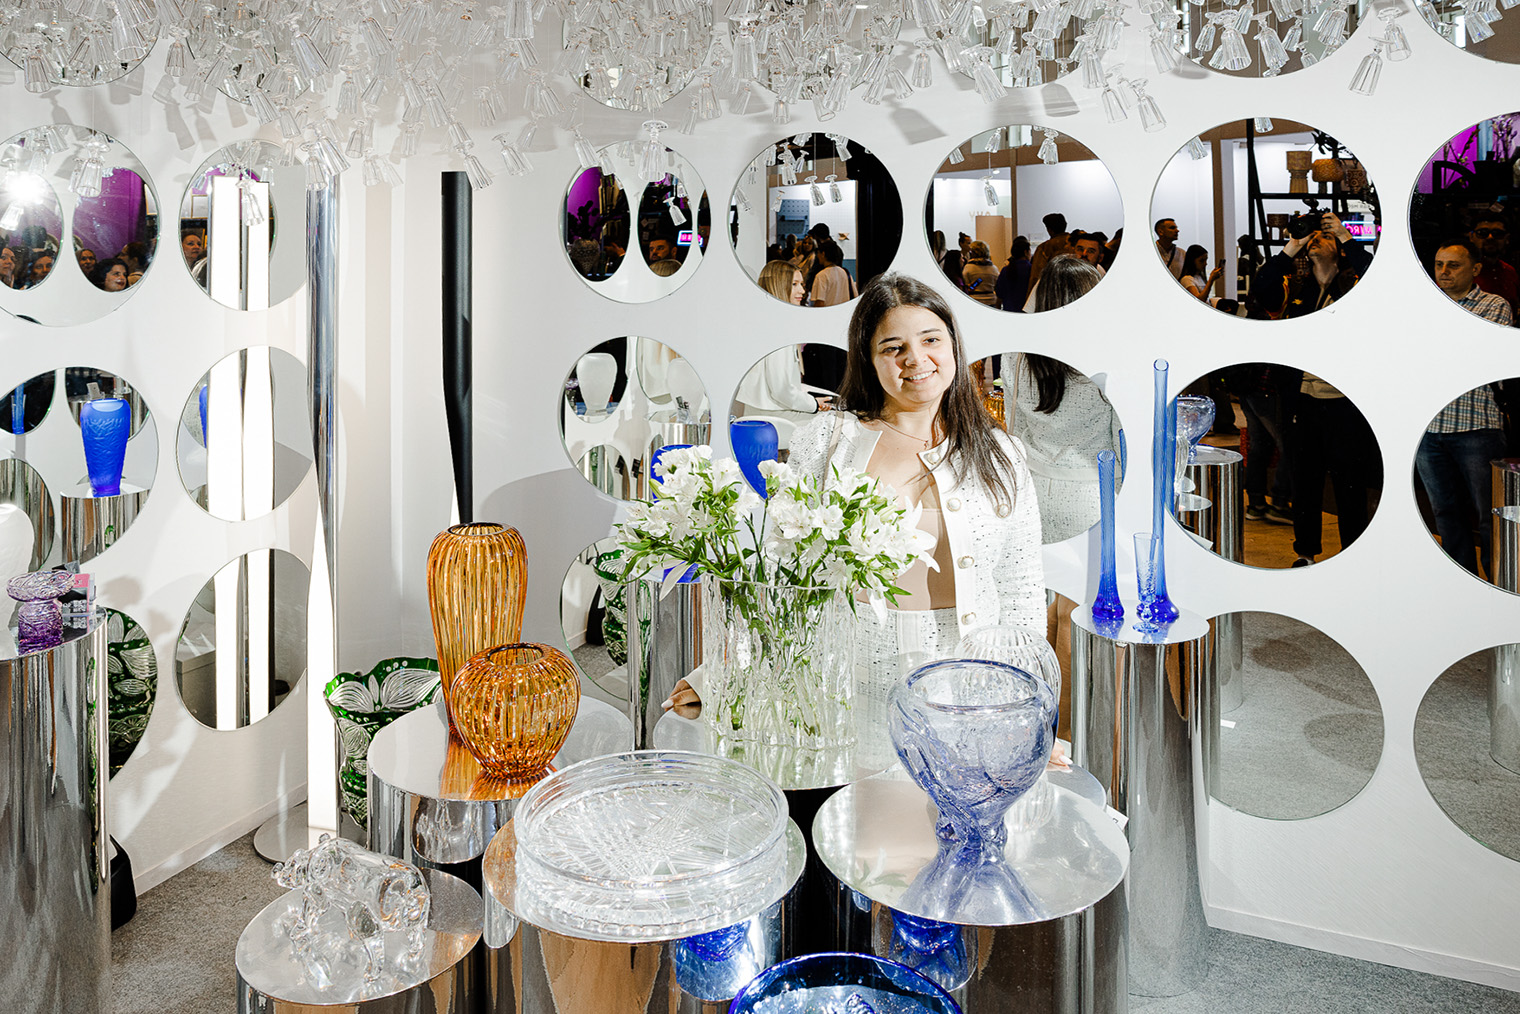 Завод из Гусь-Хрустального представил новую коллекцию, и в ней есть как более классические вазы, так и модные рифленые